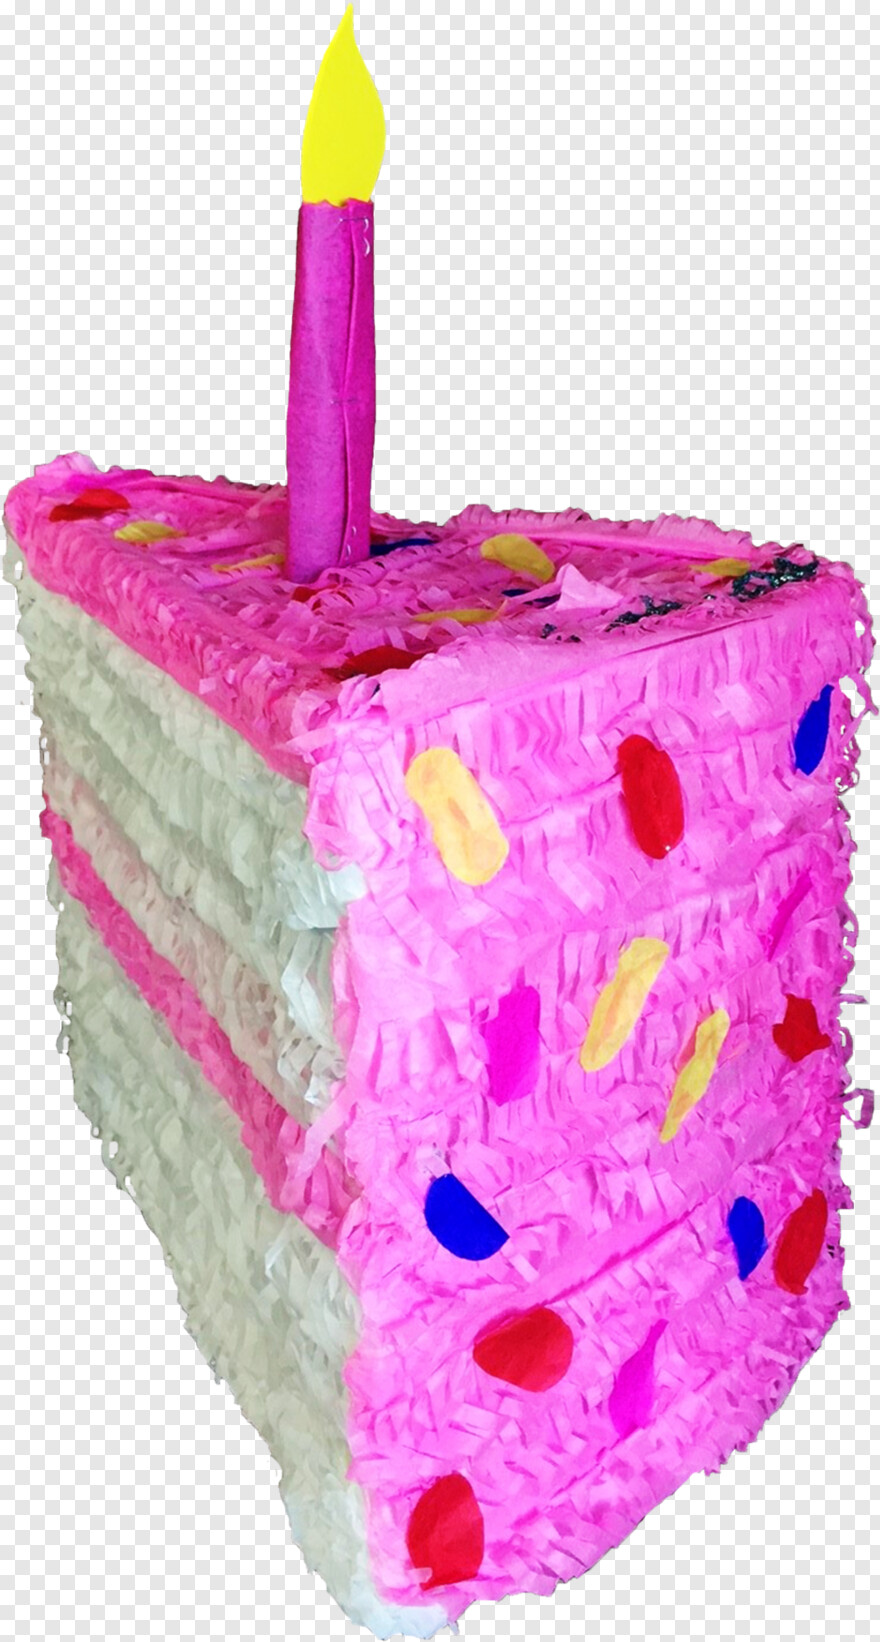 cake-slice # 359448